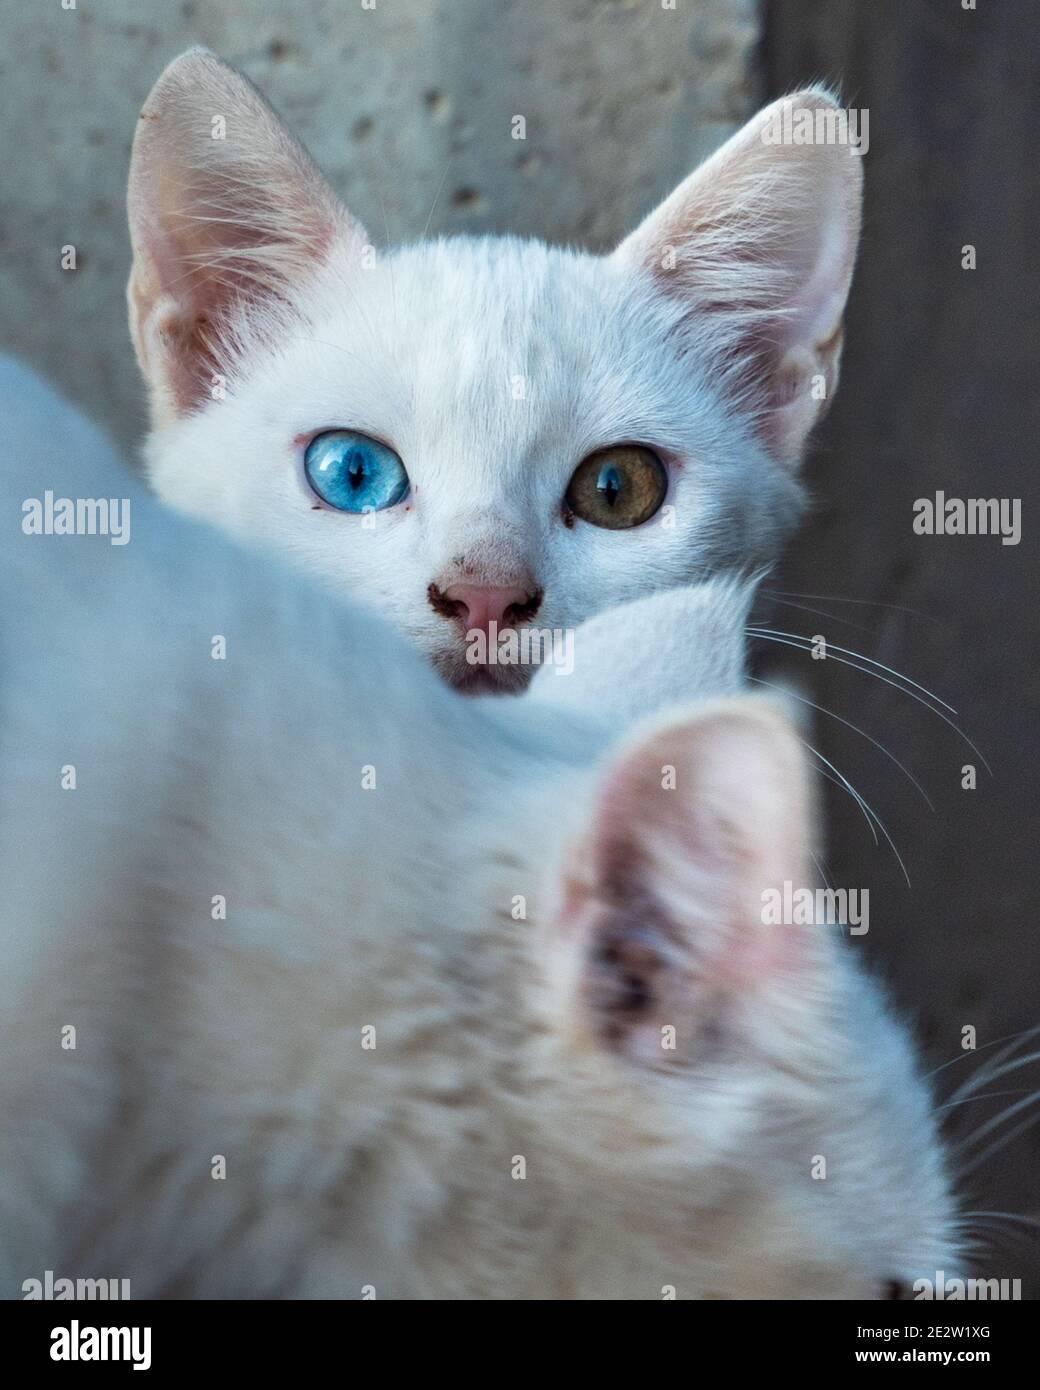 Sélectif foyer du chaton blanc de chat avec différents yeux regardant autour se cachant soigneusement derrière sa mère. Chaton aux yeux impairs. Chat avec 2 couleurs différentes Banque D'Images